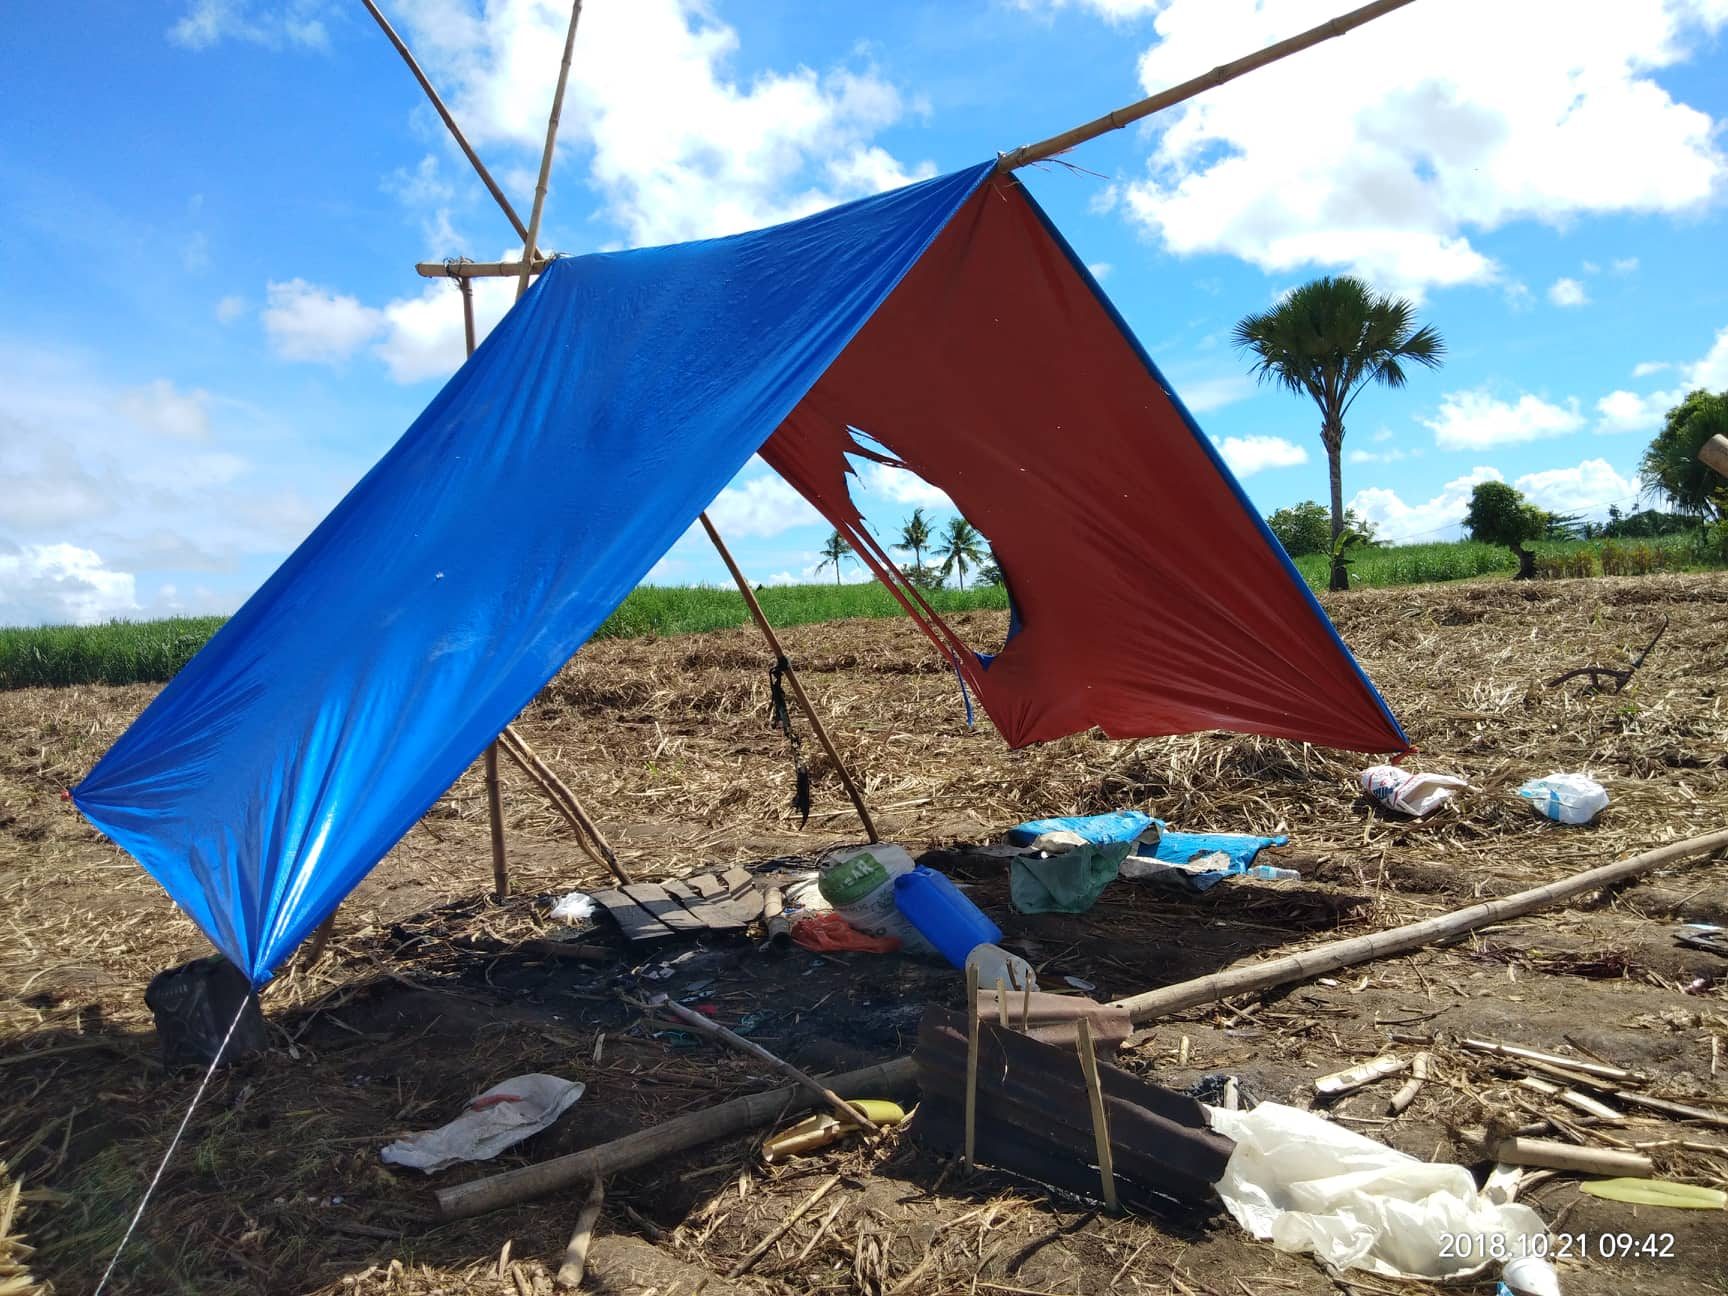 9 farmers killed at Negros Occidental hacienda